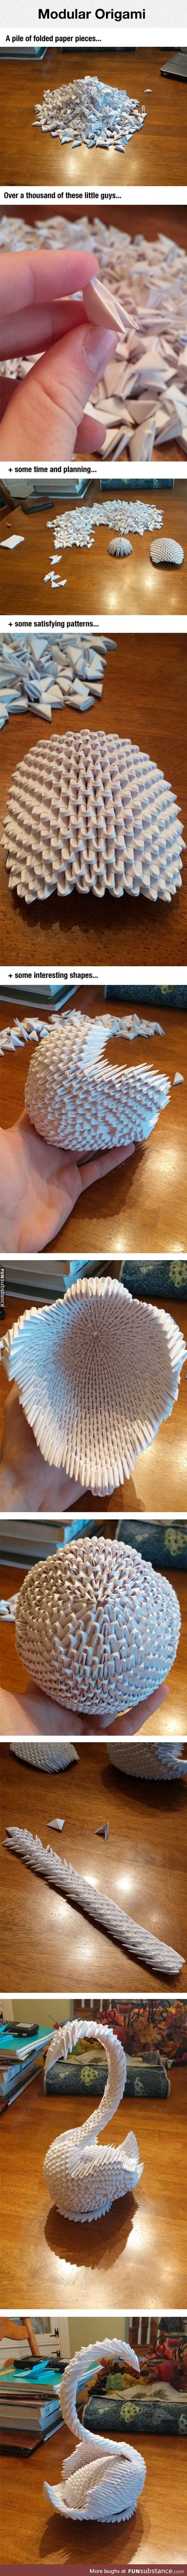 Magnificent origami